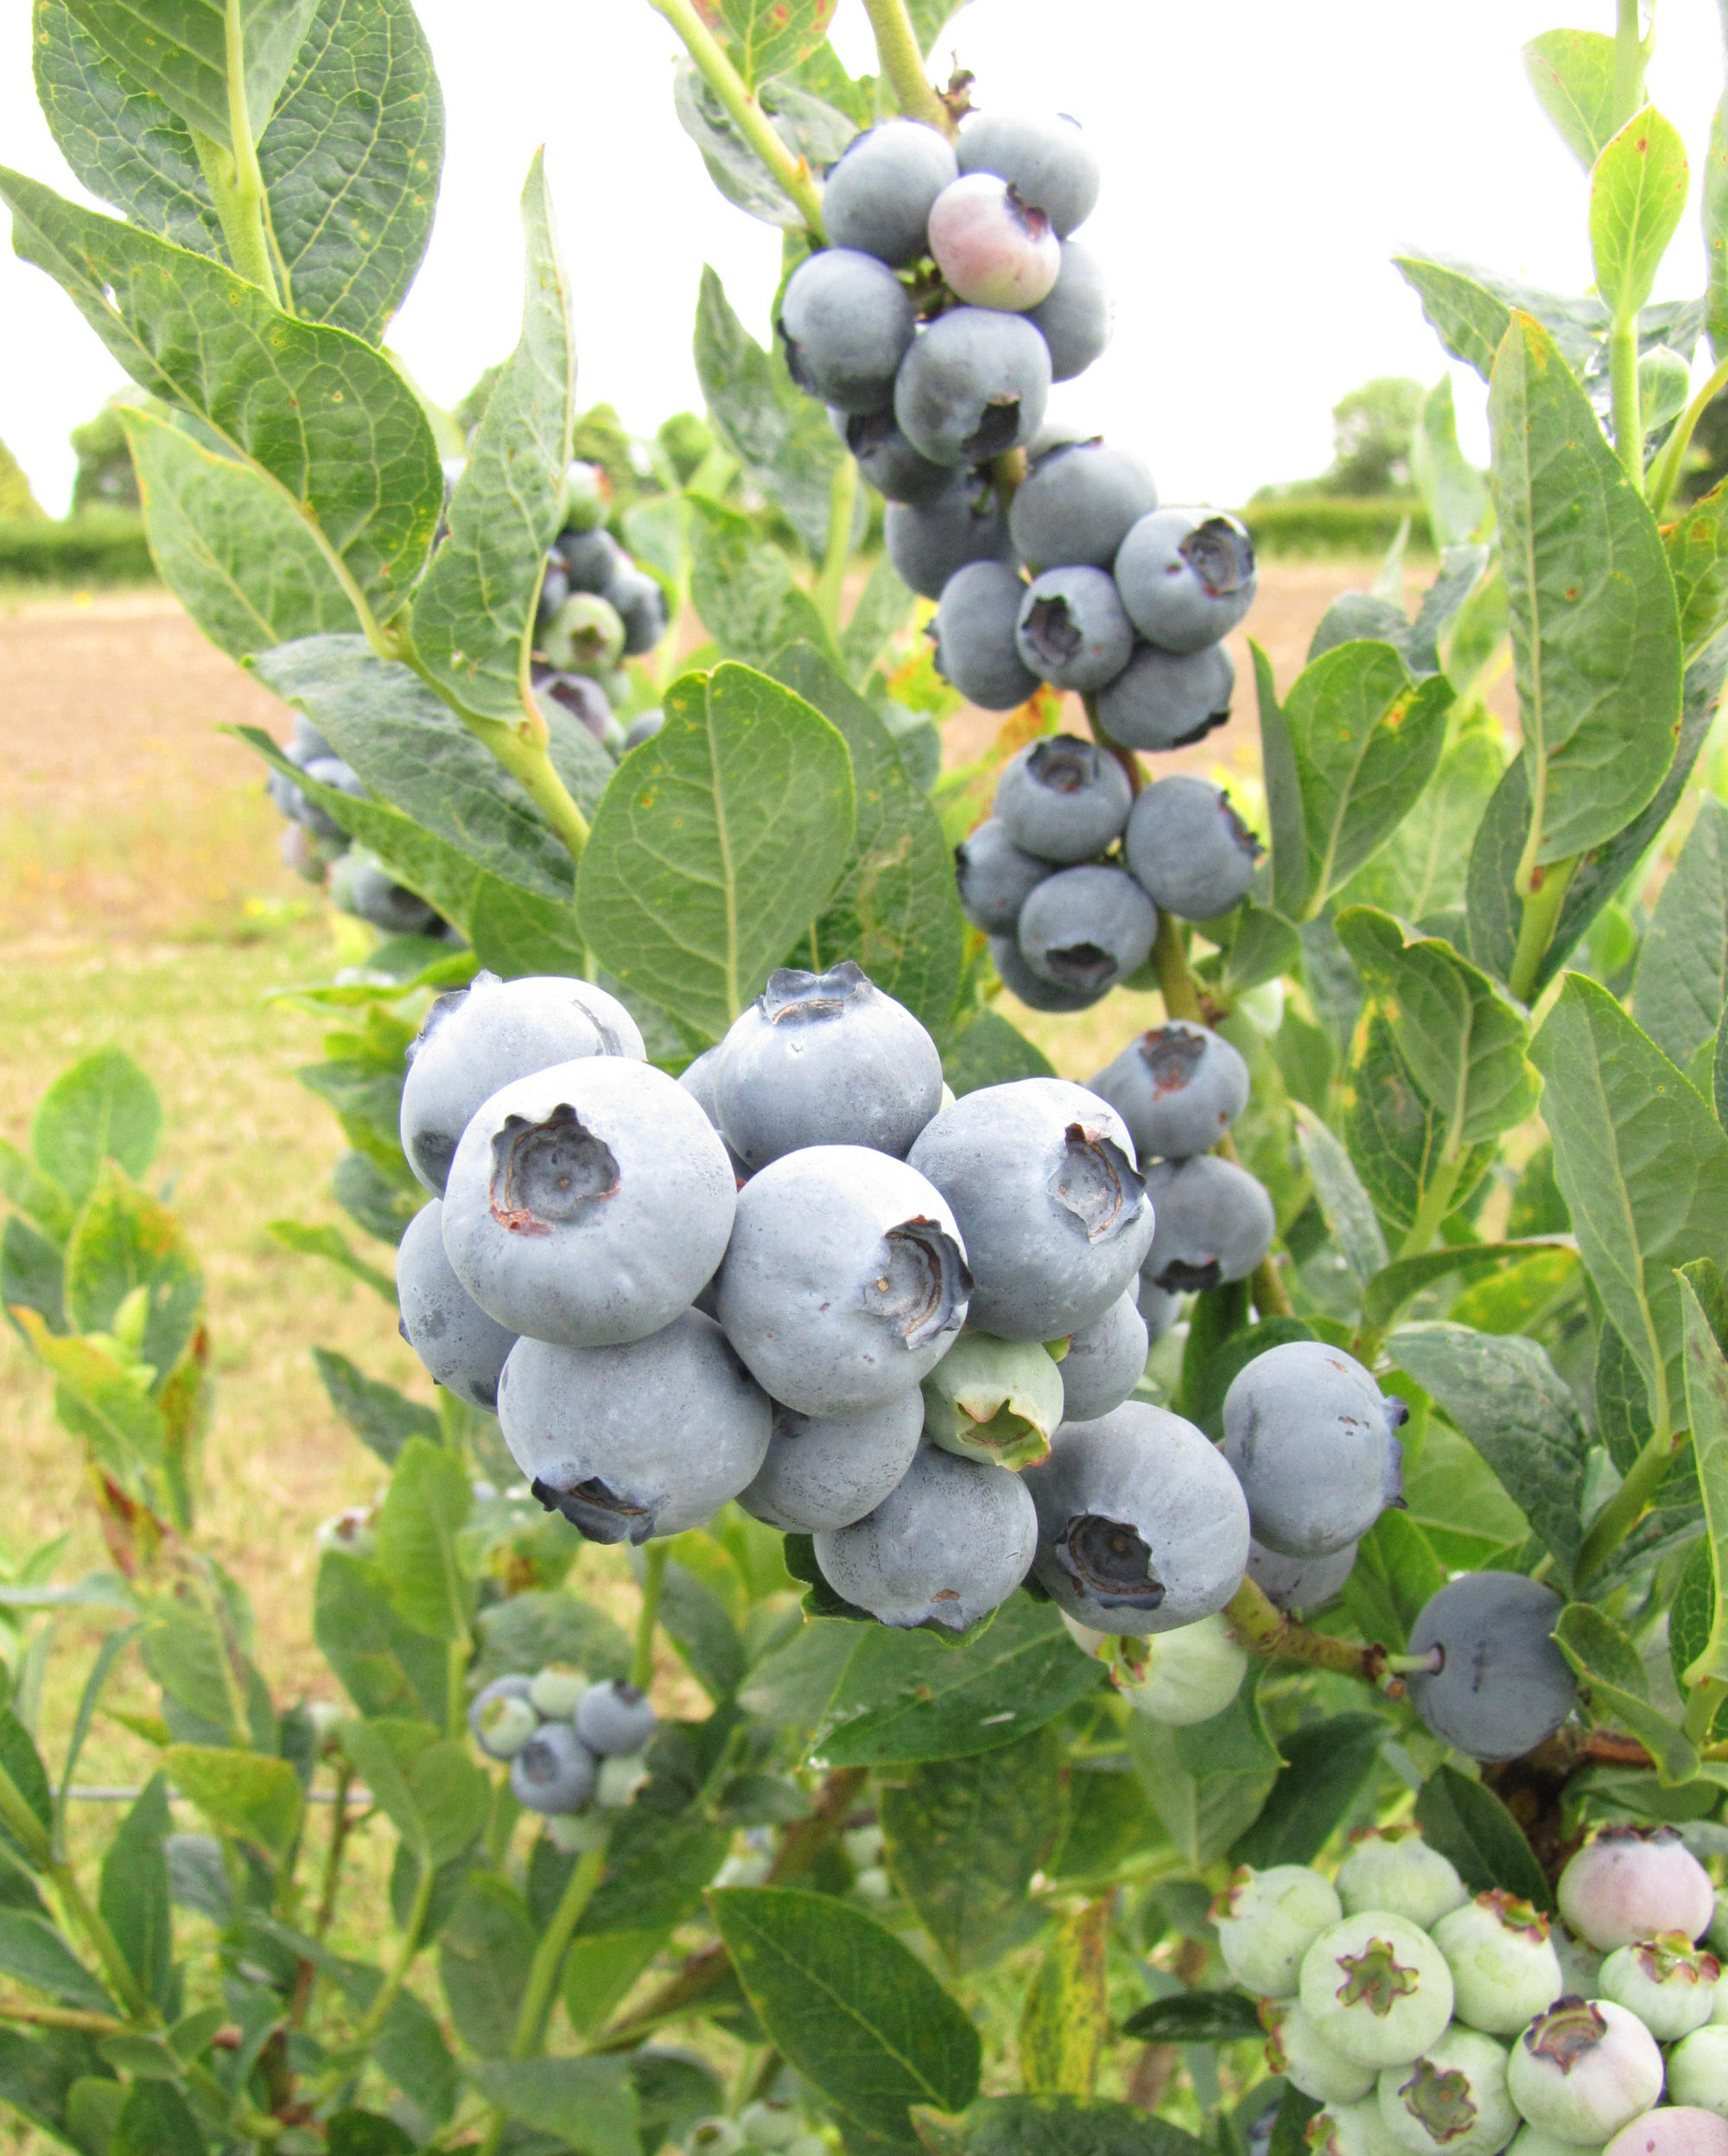 Bluegold blueberries (northern highbrush types)